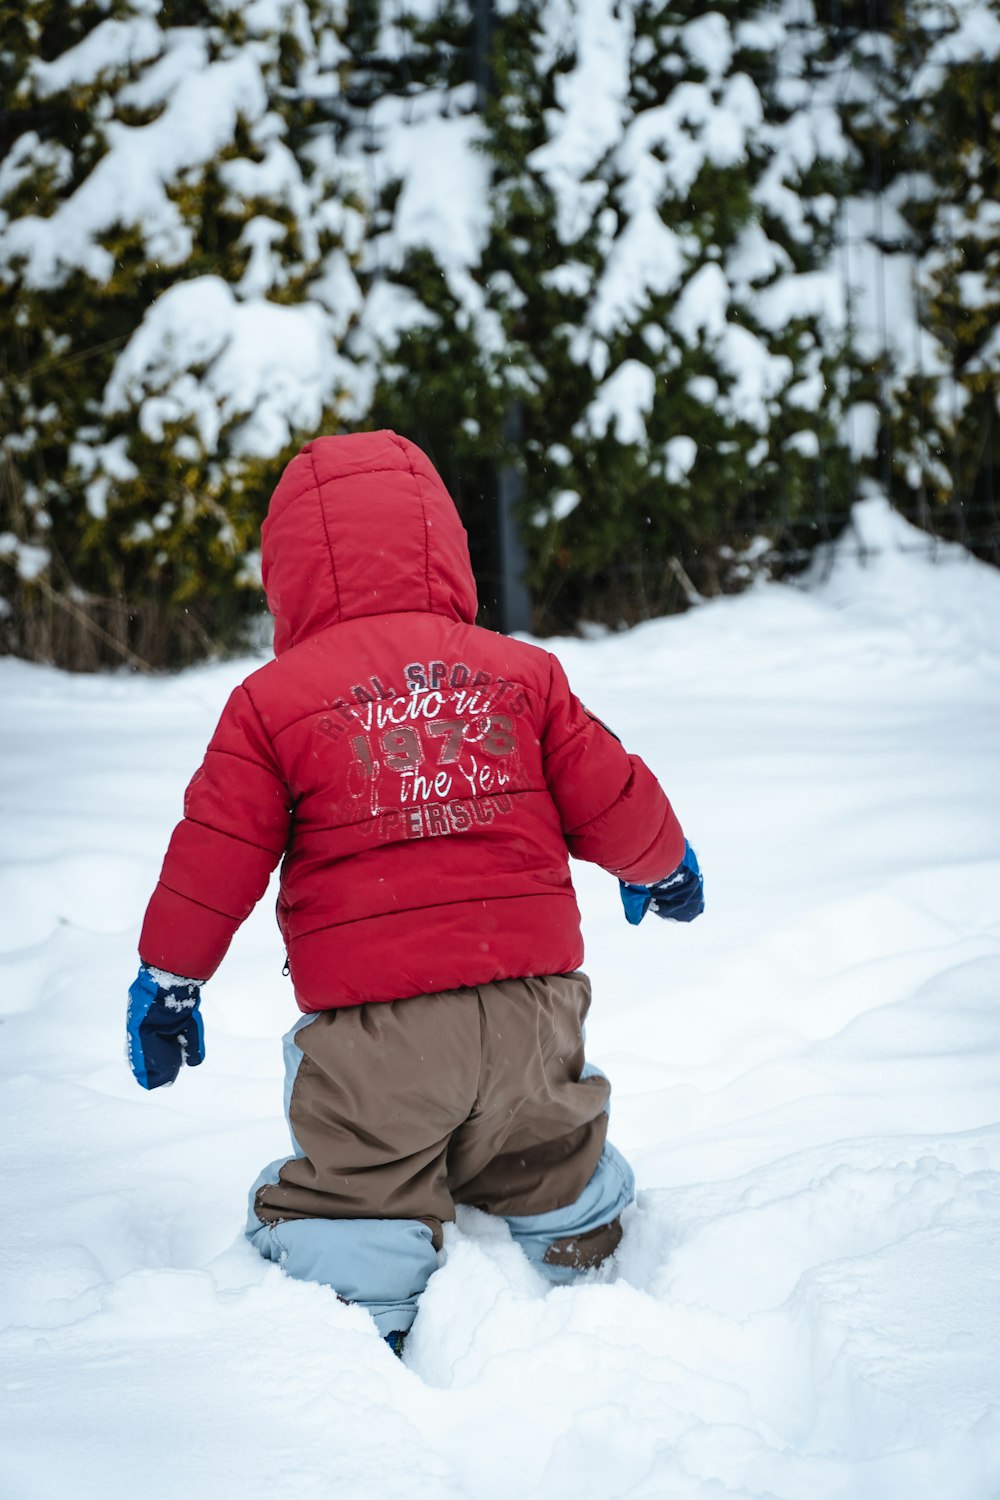 Un niño pequeño con una chaqueta roja jugando en la nieve